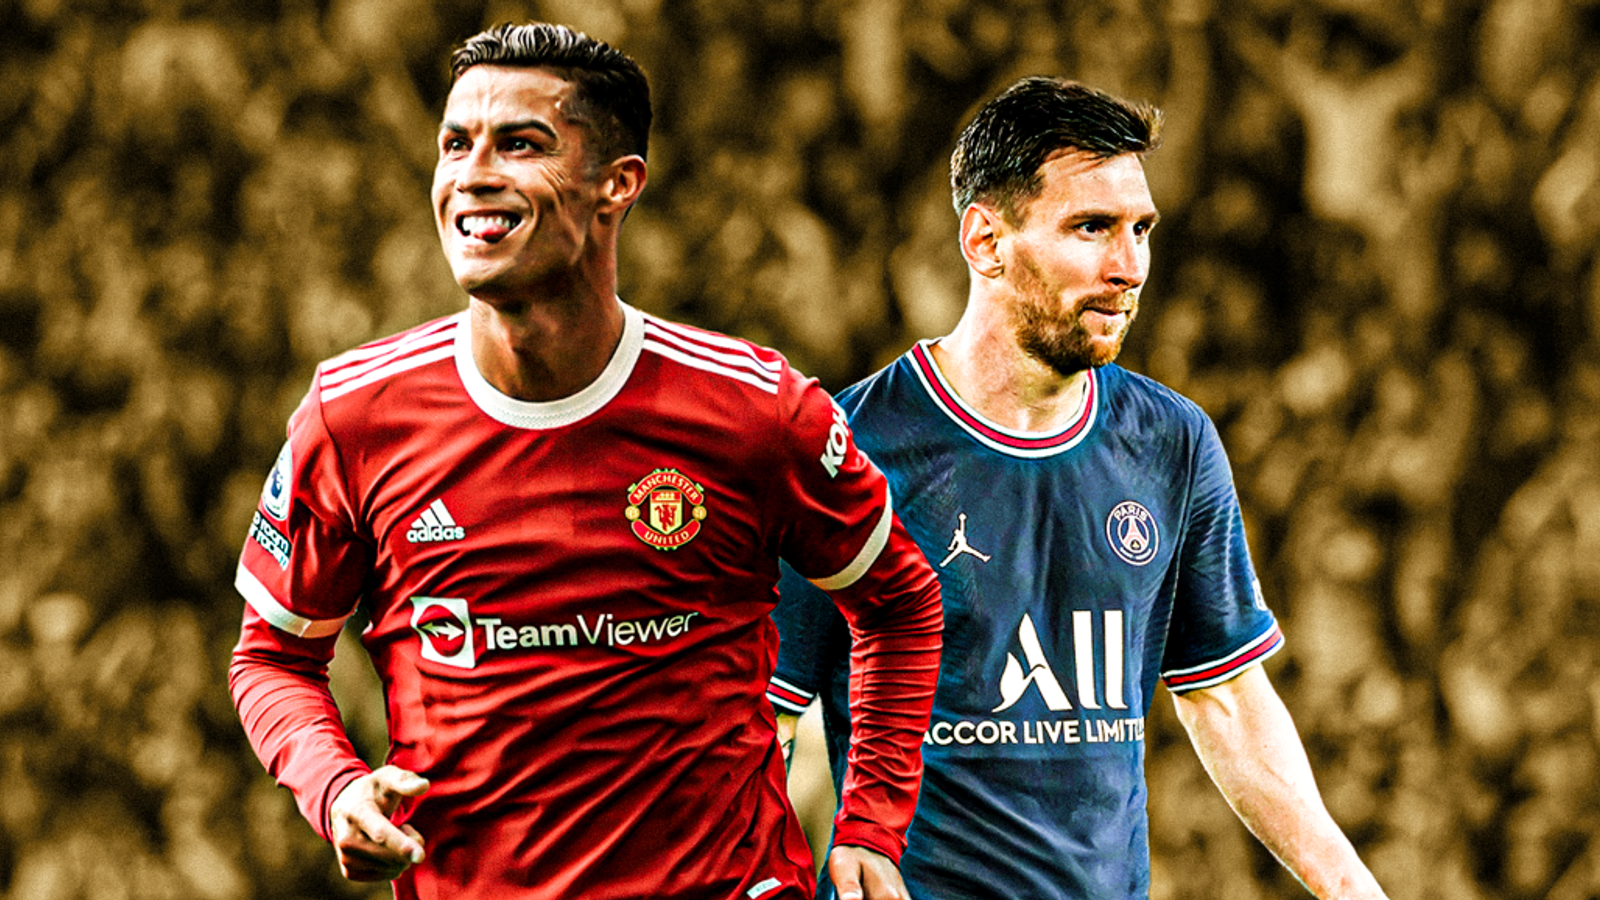 Cristiano Ronaldo vs Lionel Messi - Who had a better 2021?